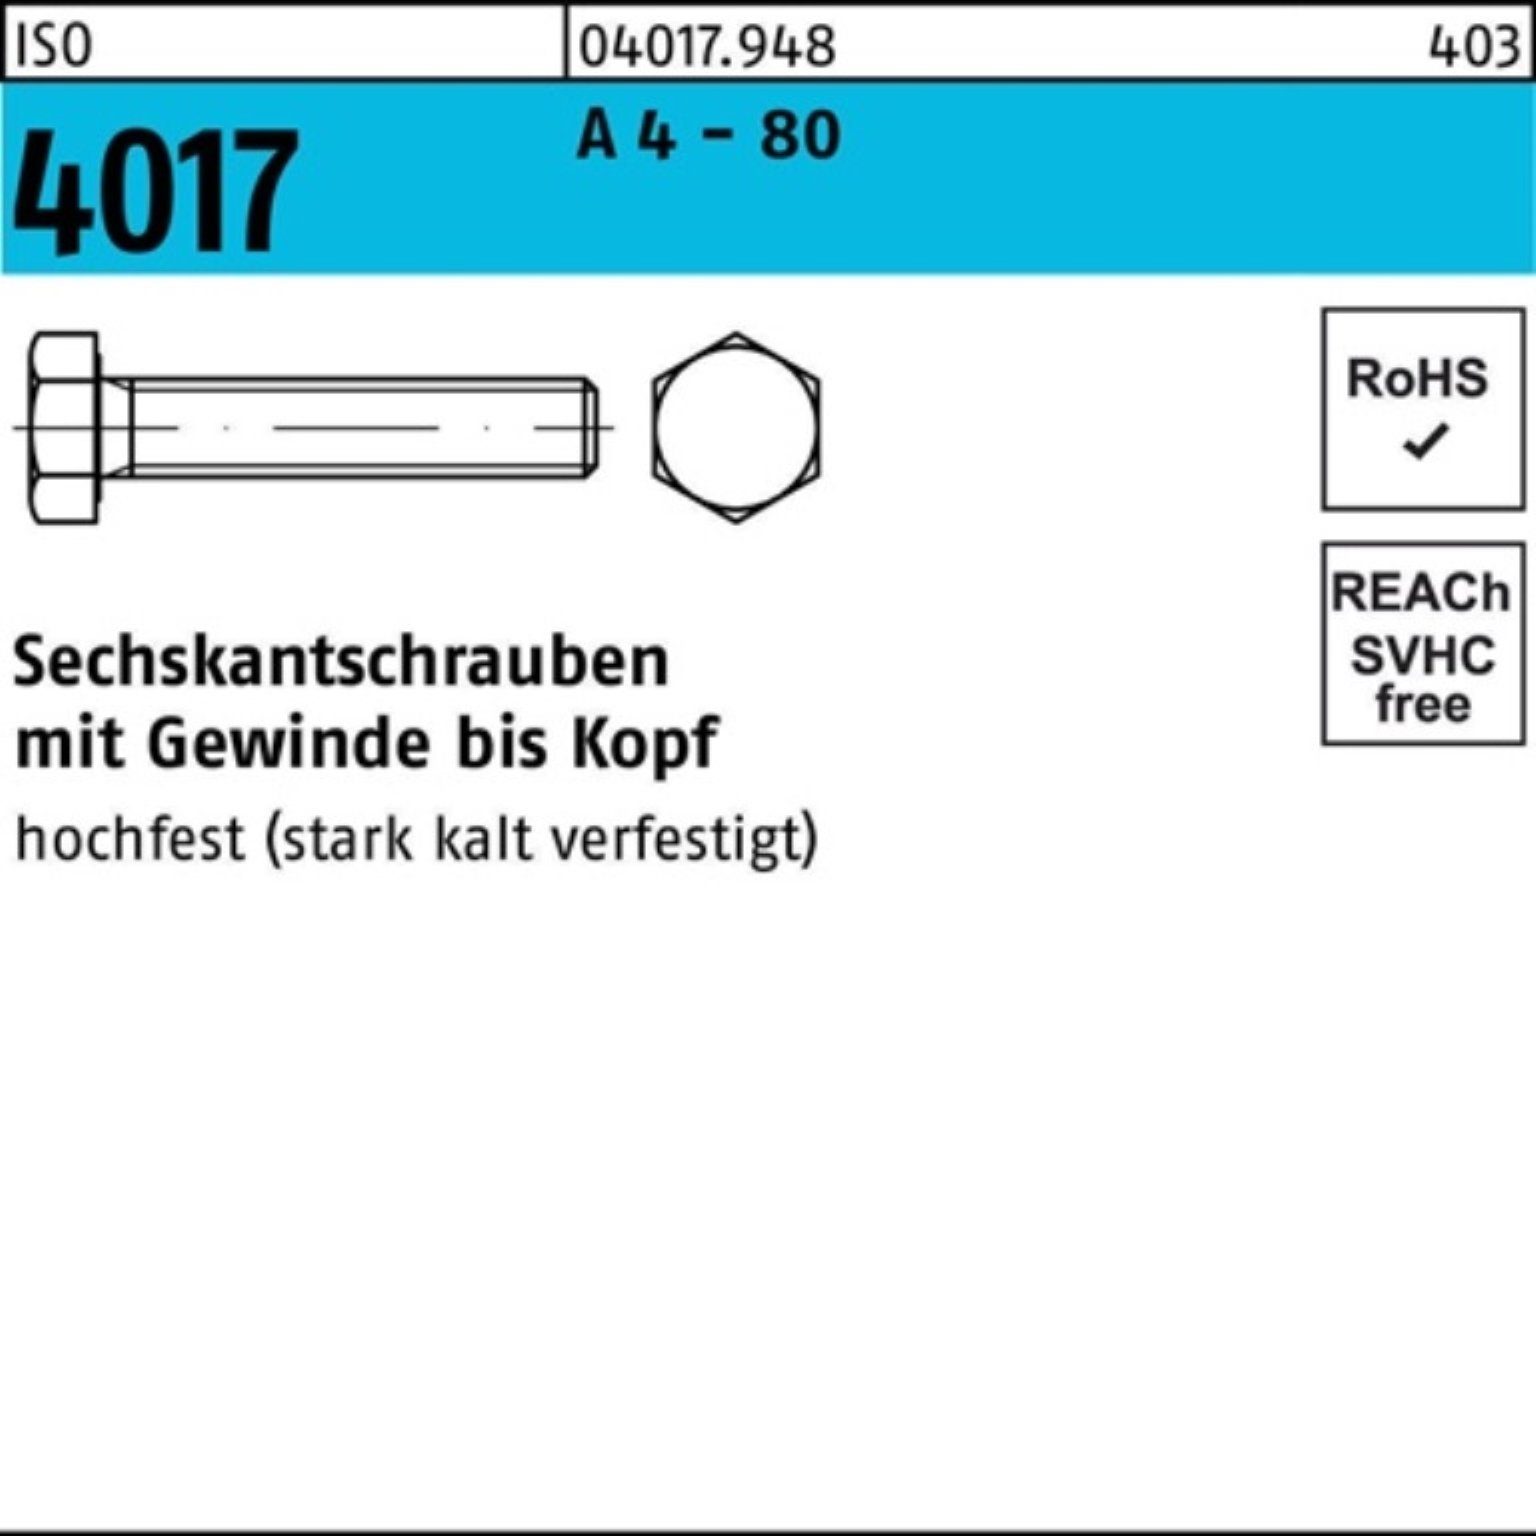 Bufab Sechskantschraube 100er Pack Sechskantschraube ISO 4017 VG M6x 12 A 4 - 80 100 Stück IS